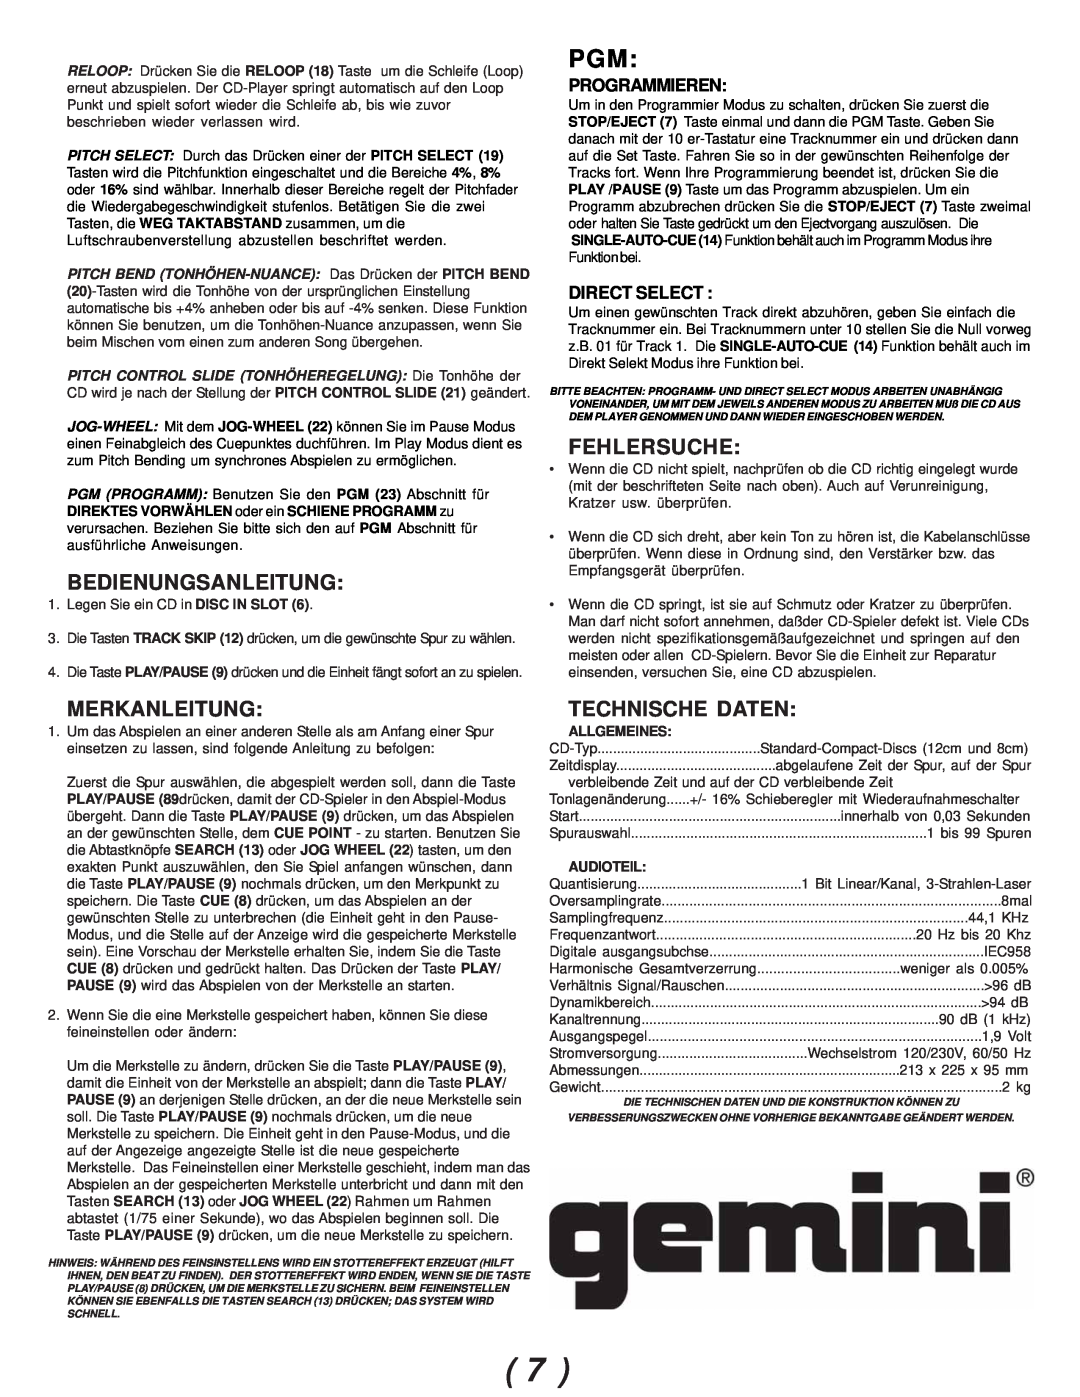 Gemini CDJ-02 Bedienungsanleitung, Fehlersuche, Merkanleitung, Technische Daten, Programmieren, Direct Select, Allgemeines 